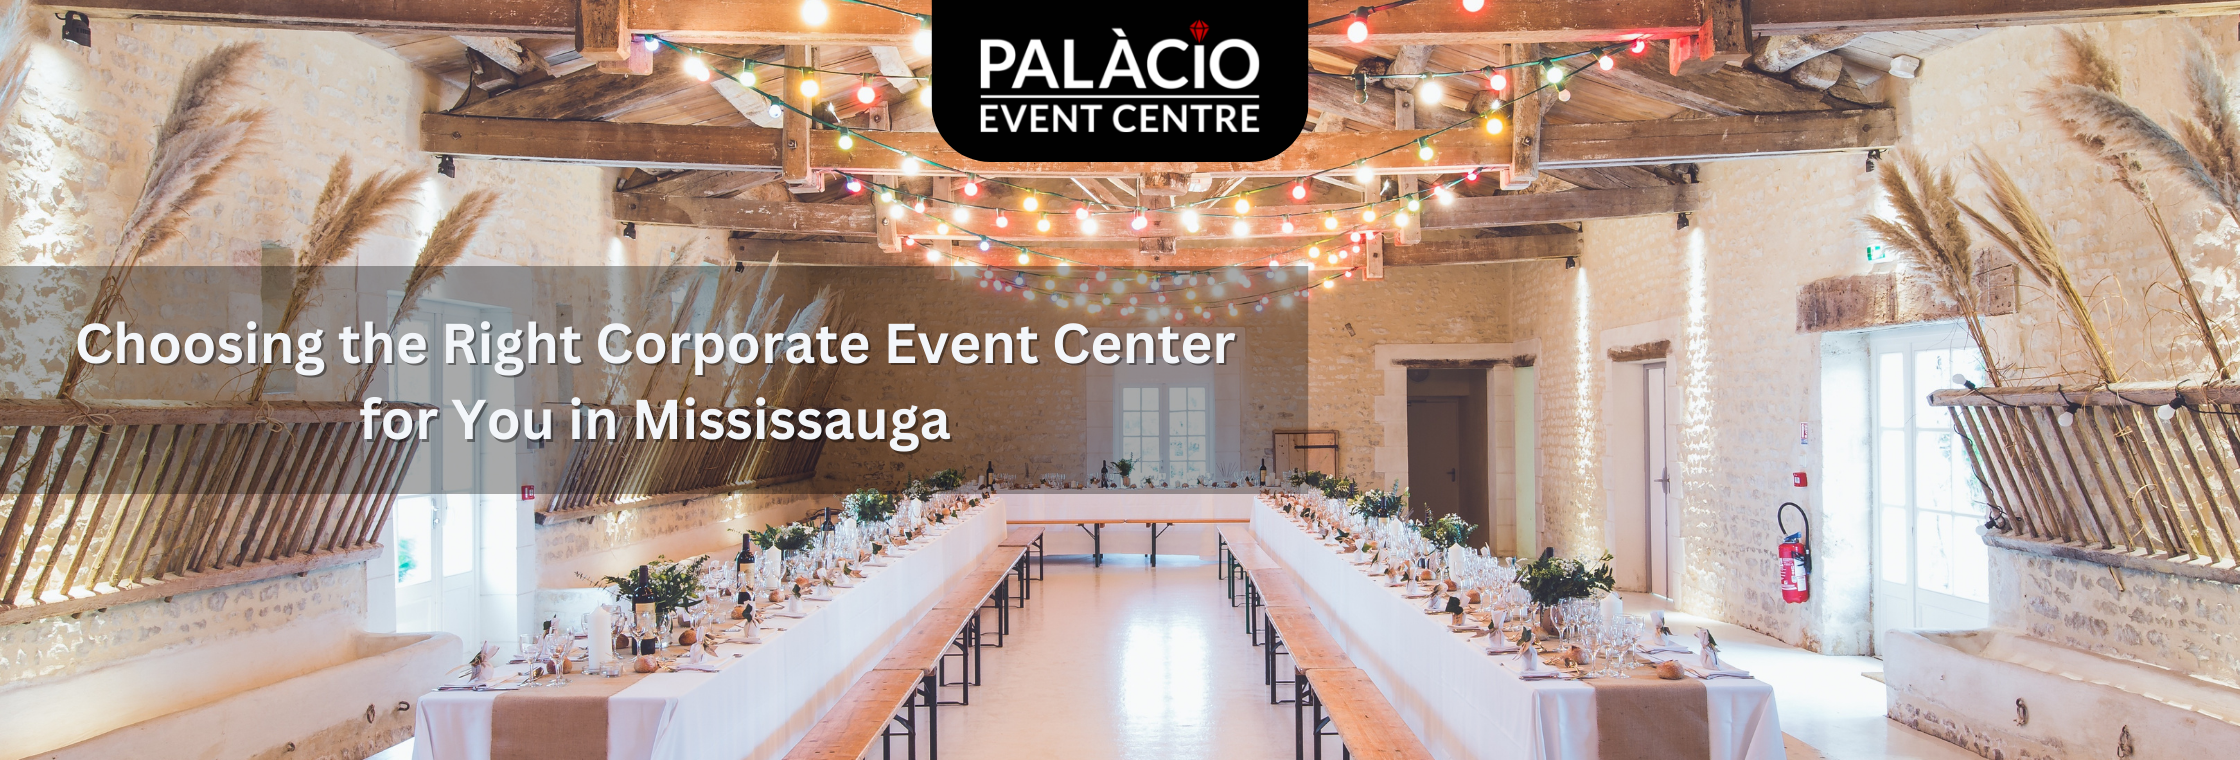 Palacio Event Centre